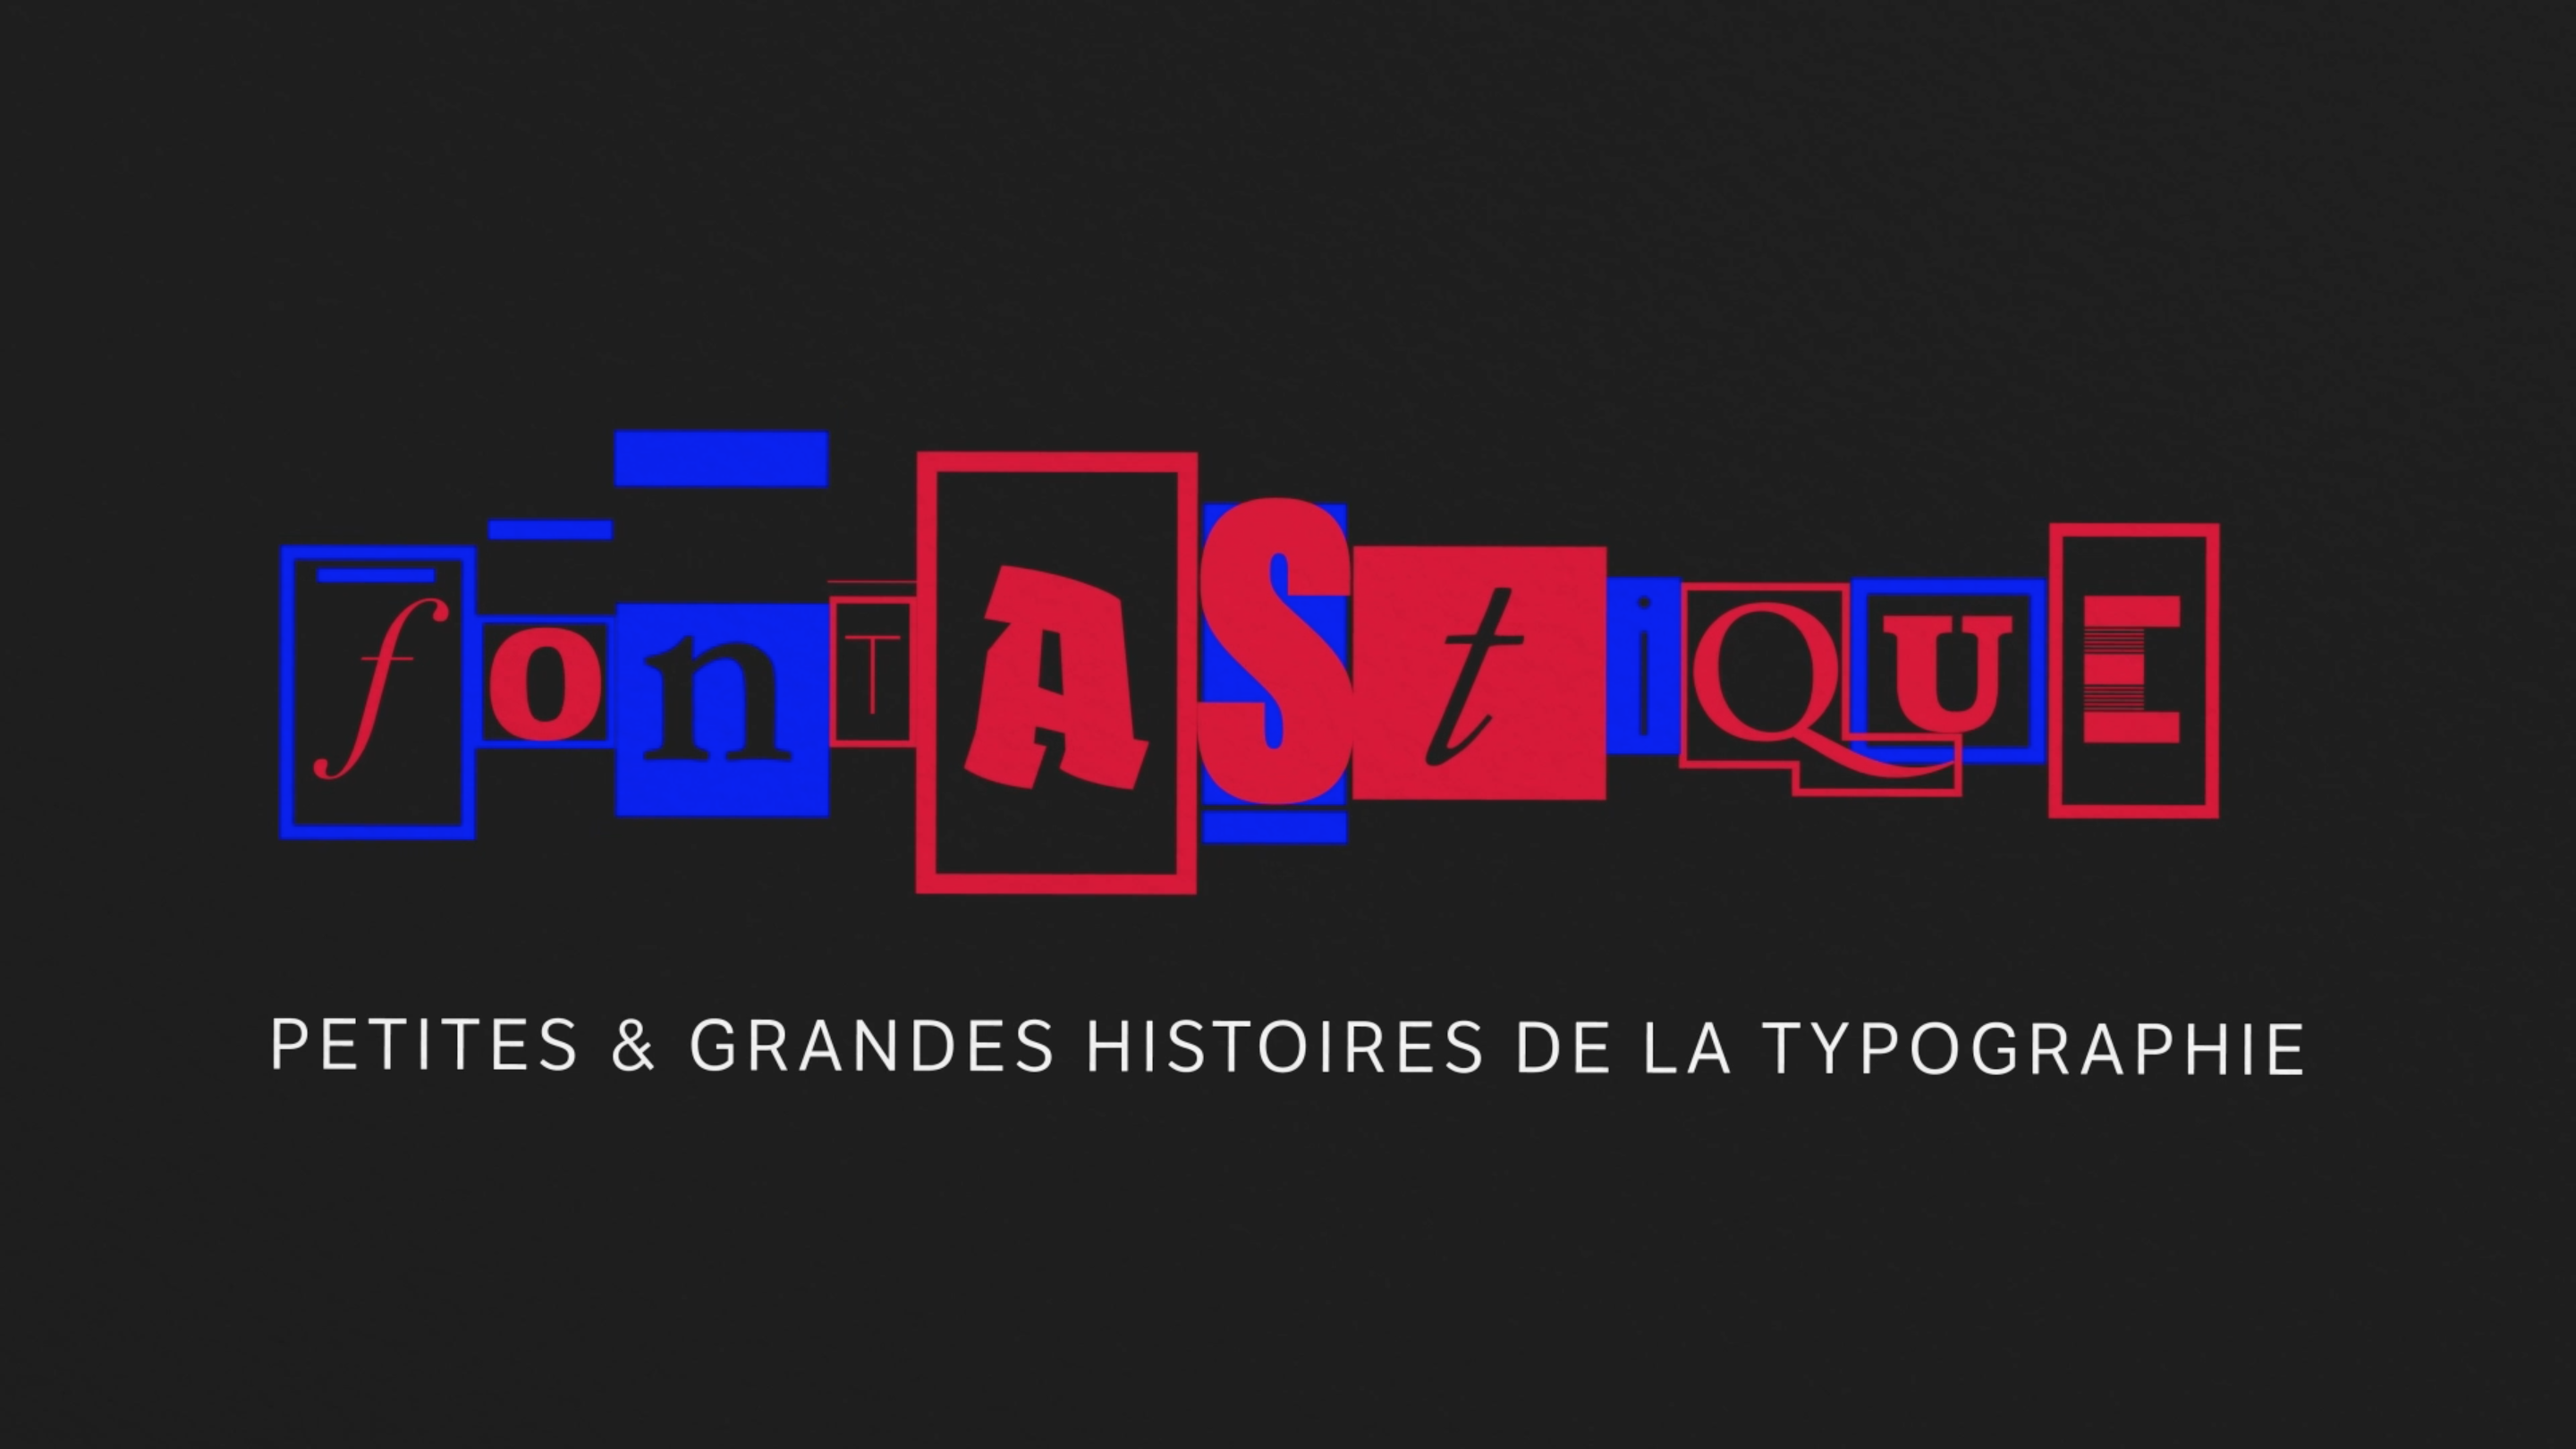 Logotype serie de vidéos Fontastique